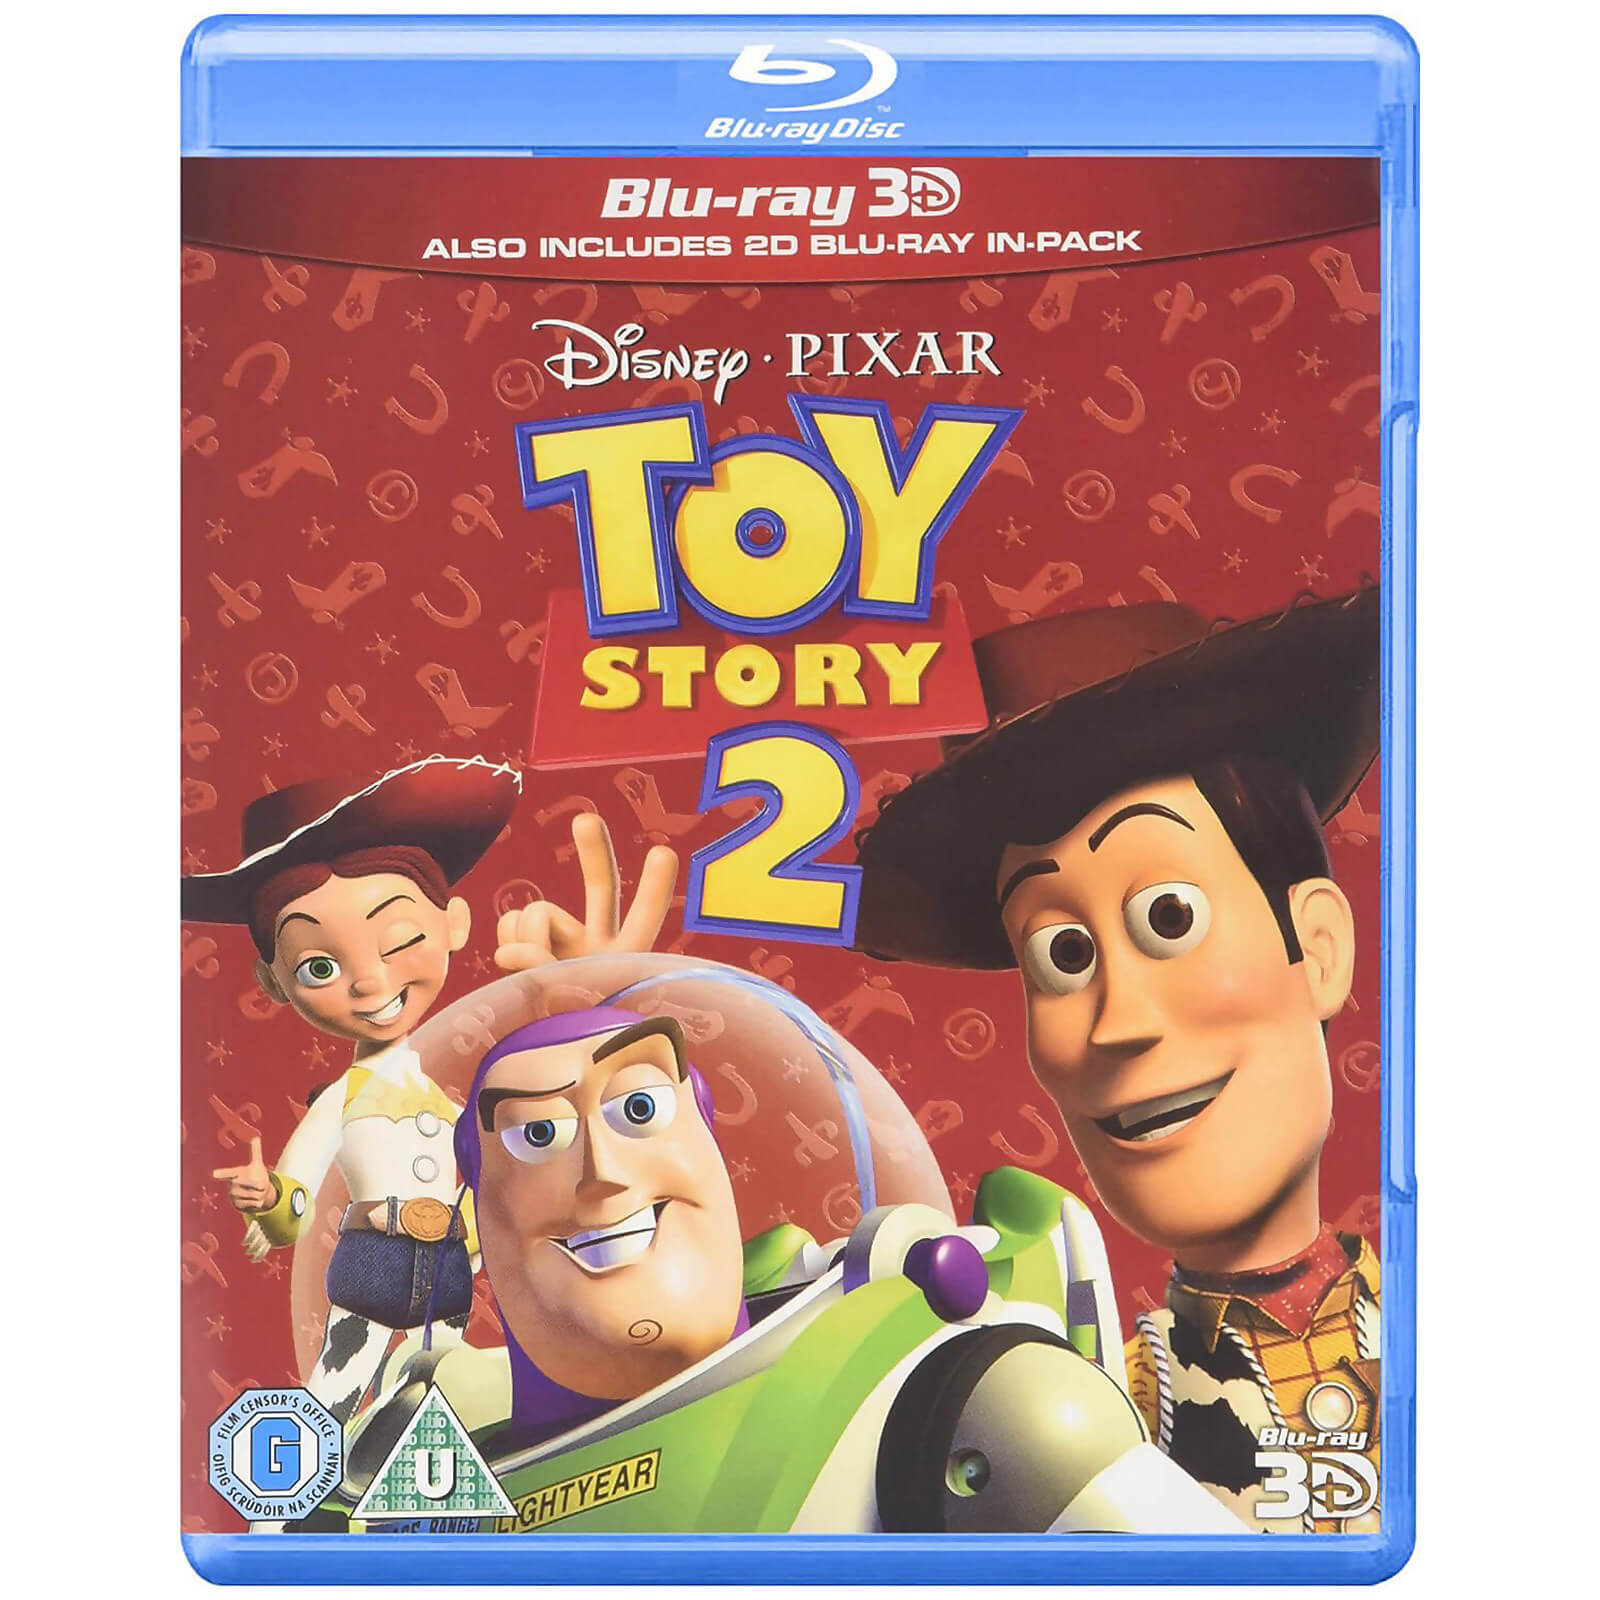 Toy Story 2 3D (enthält die 2D-Version) von Pixar